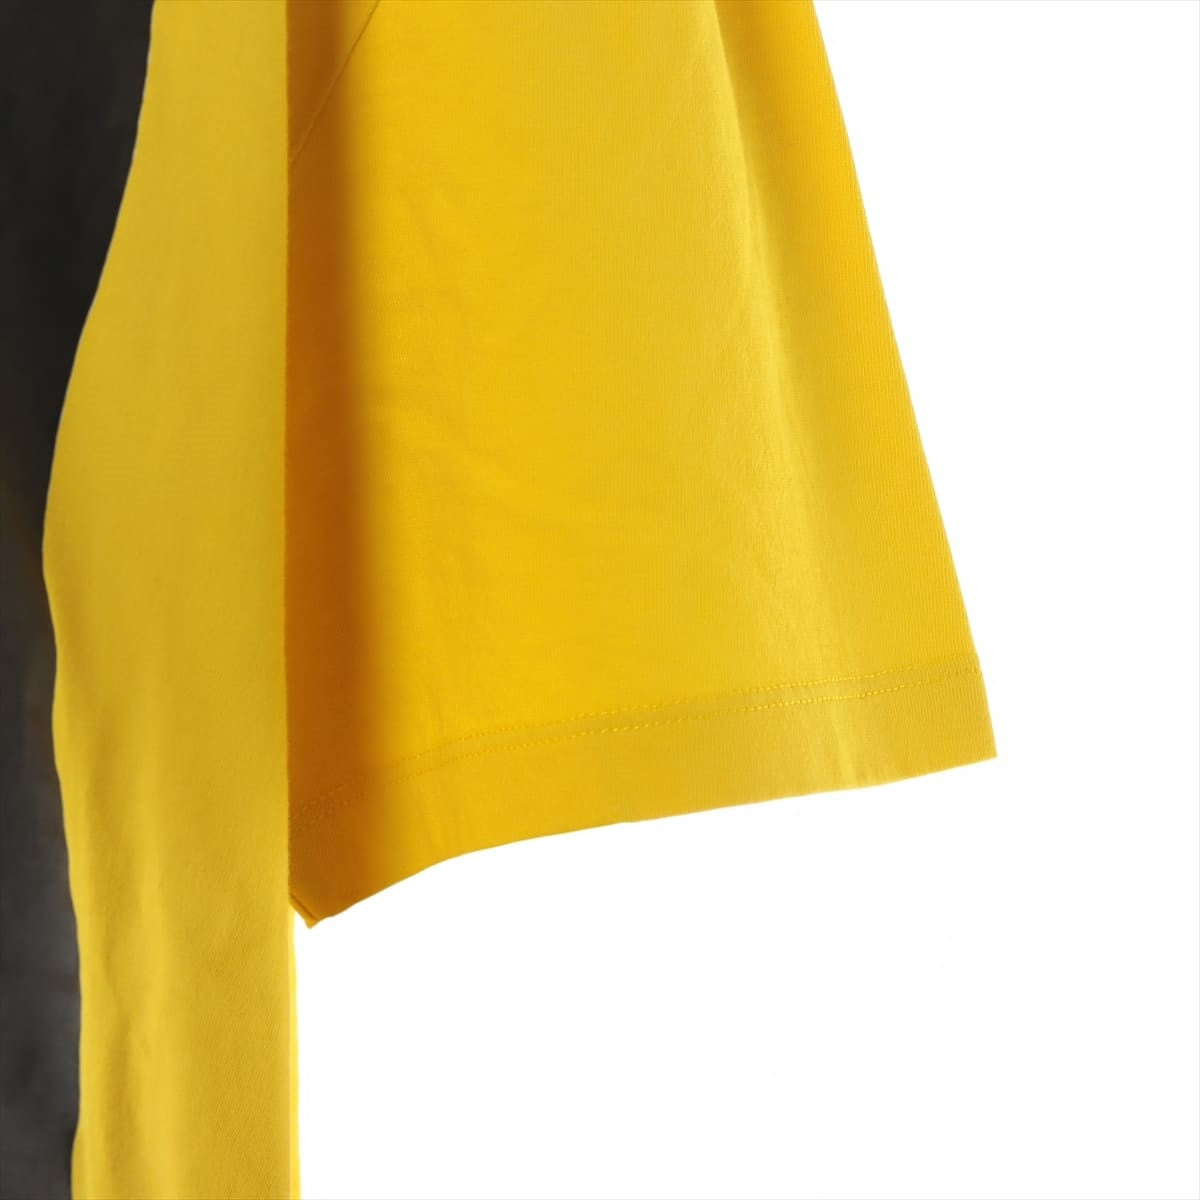 Loewe 23SS Cotton T-shirt M Ladies' Yellow  ceramic print H800Y22X19